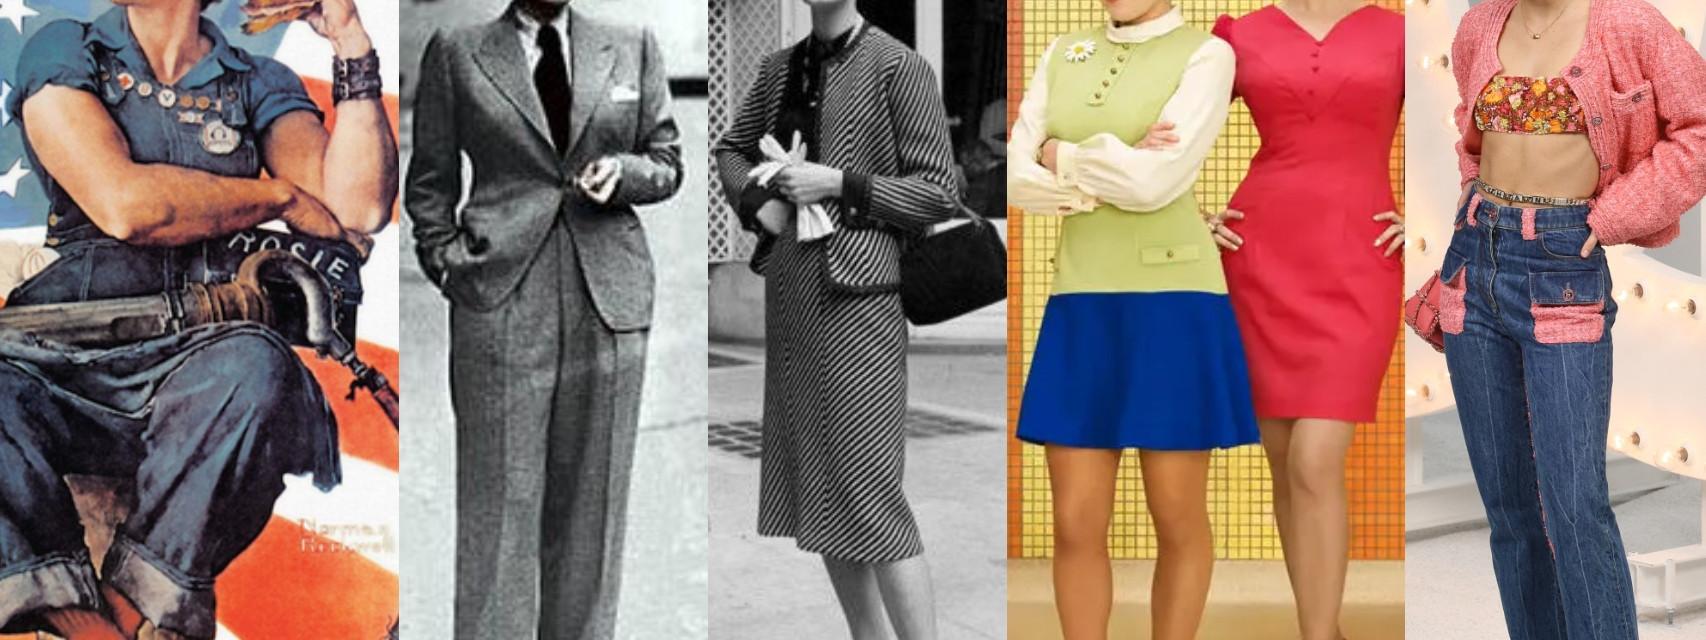 Los 'uniformes de trabajo' de las mujeres: del traje Chanel al vestido